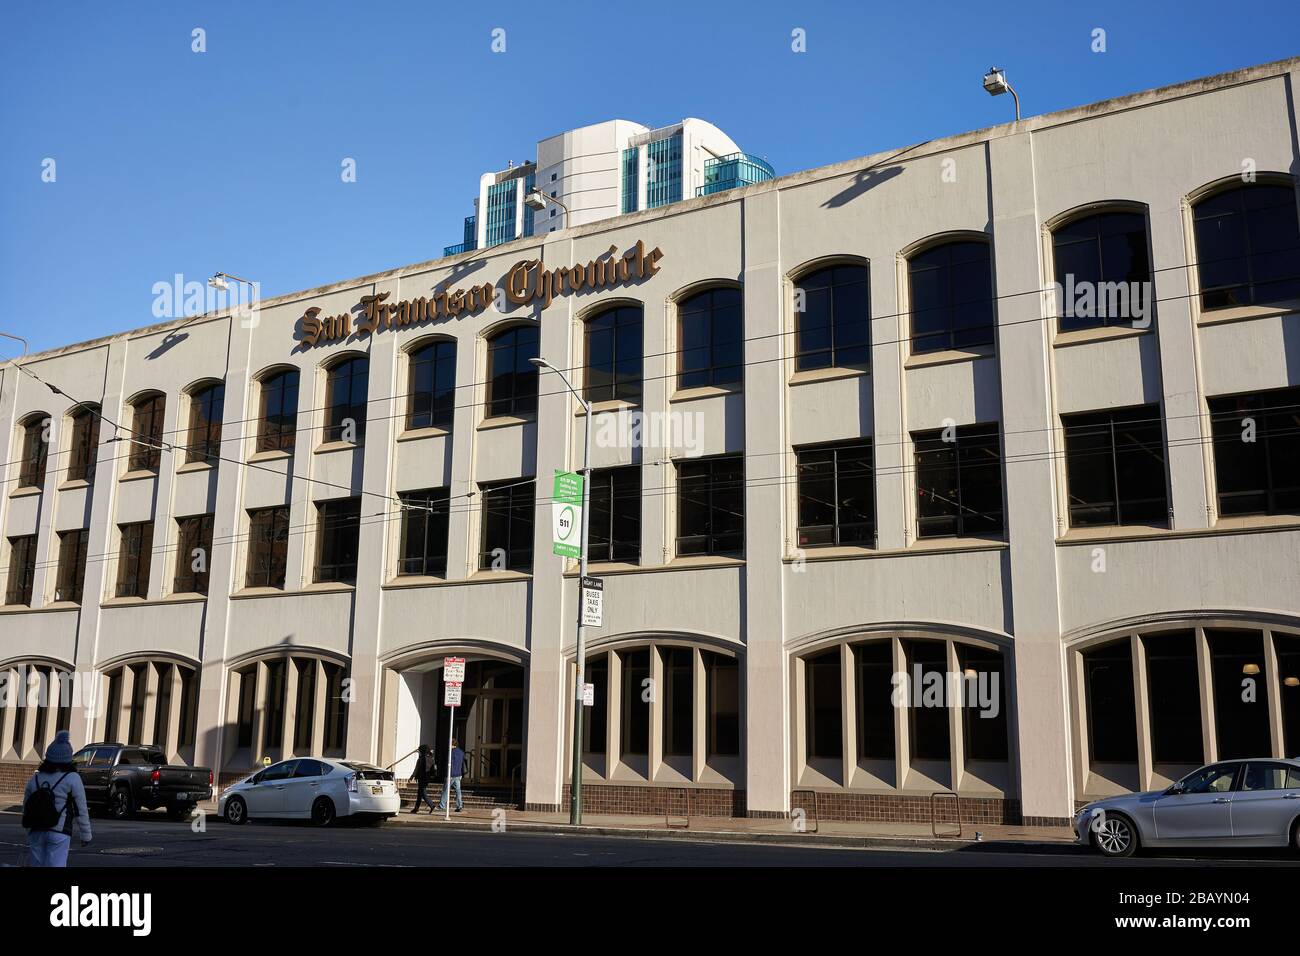 Das Hauptquartier der San Francisco Chronicle im Stadtteil Soma. Die Zeitung bedient vor allem die San Francisco Bay Area im Norden Kaliforniens. Stockfoto